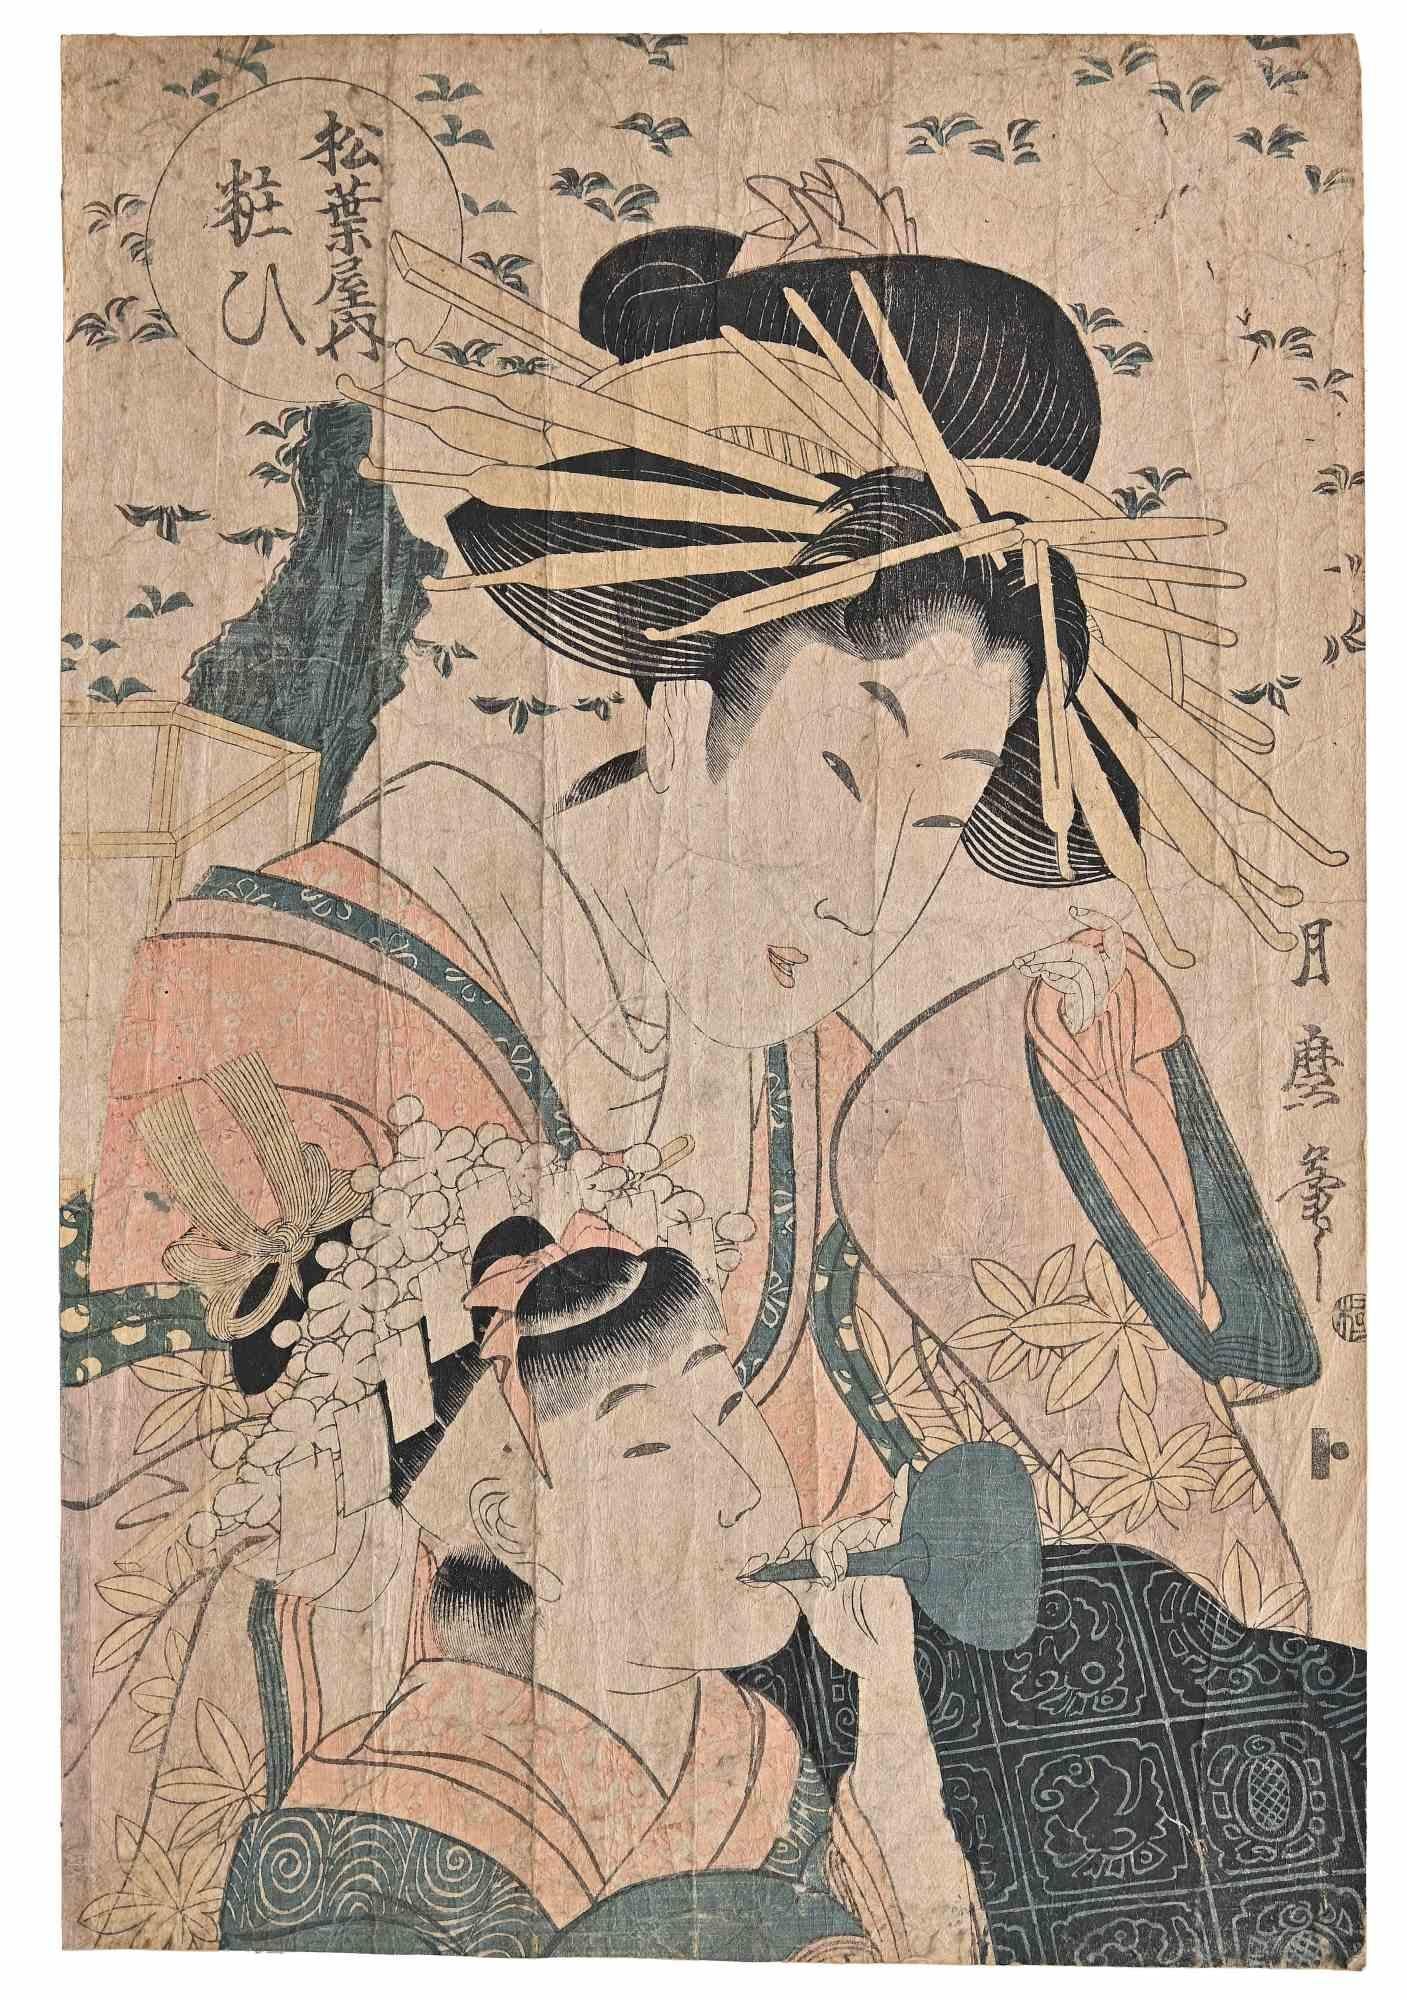 Yosooi of the Matsubaya ist ein Original-Holzschnitt, Oban-Format, realisiert von Kitagawa Tsukimaro.

Guter Zustand, aber viele Falten im Papier.

Keine Unterschrift.

Kitagawa Tsukimaro ( 1794-1836) war ein japanischer Ukiyo-e Künstler. Er war